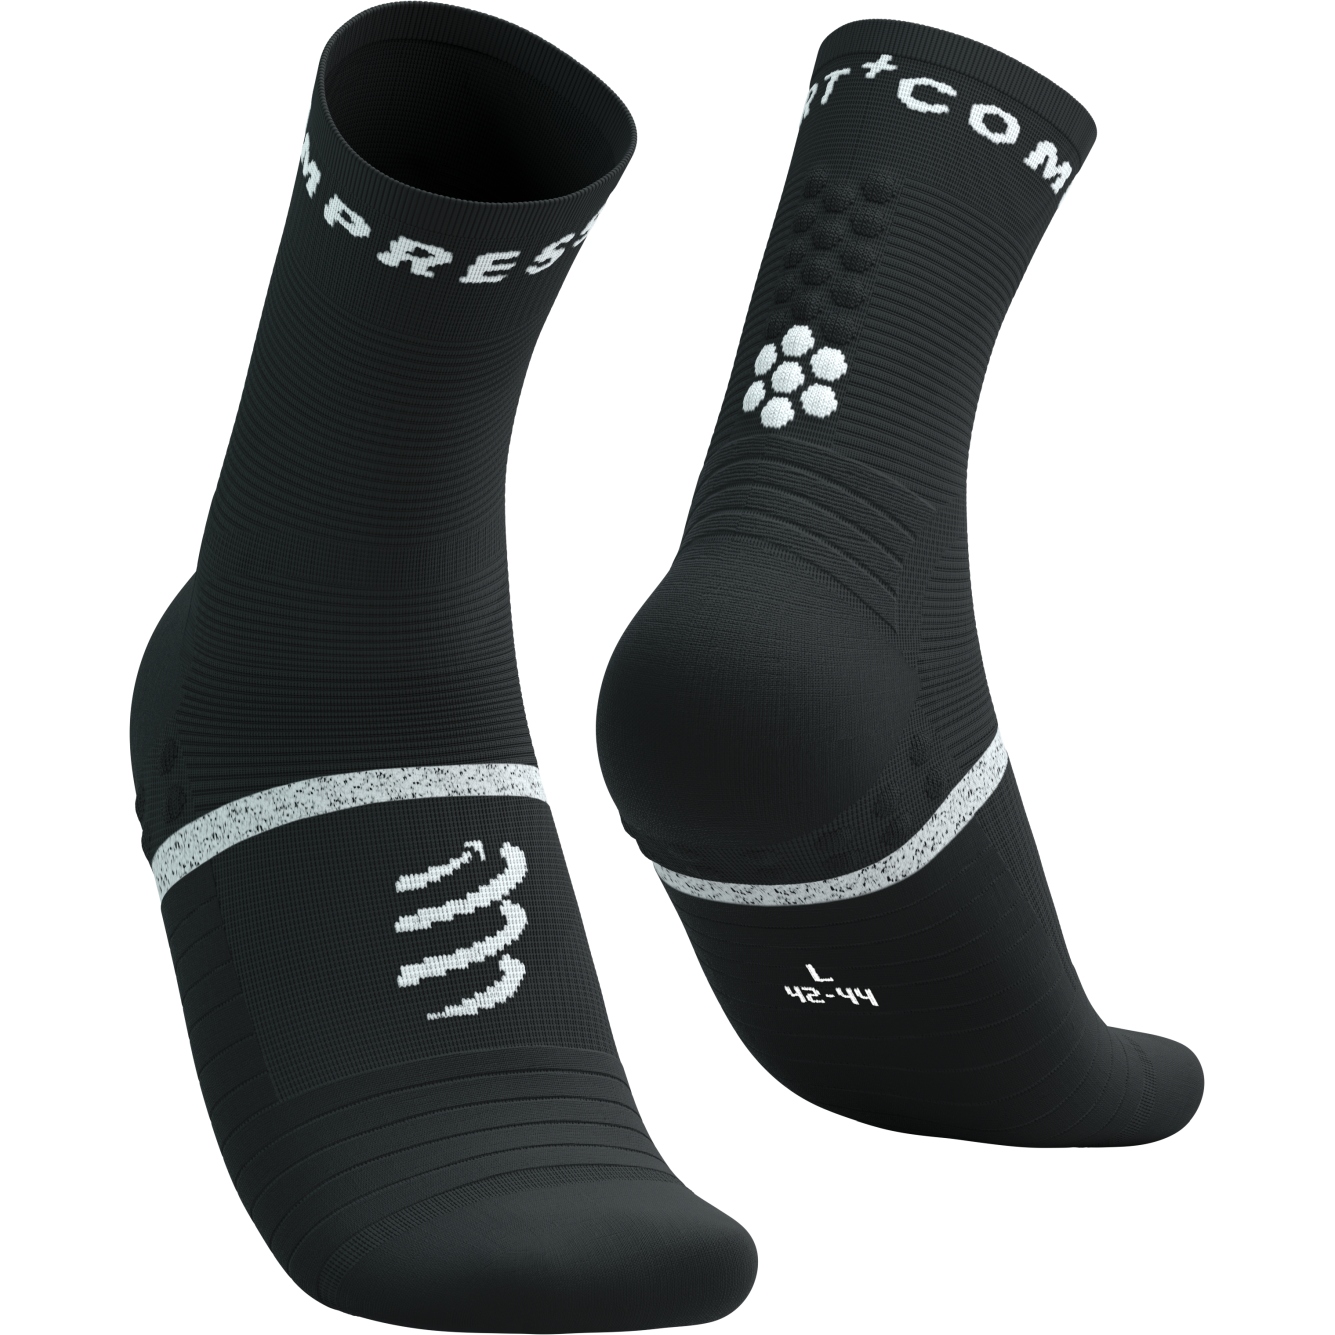 Picture of Compressport Pro Marathon Socks v2.0 - black/white